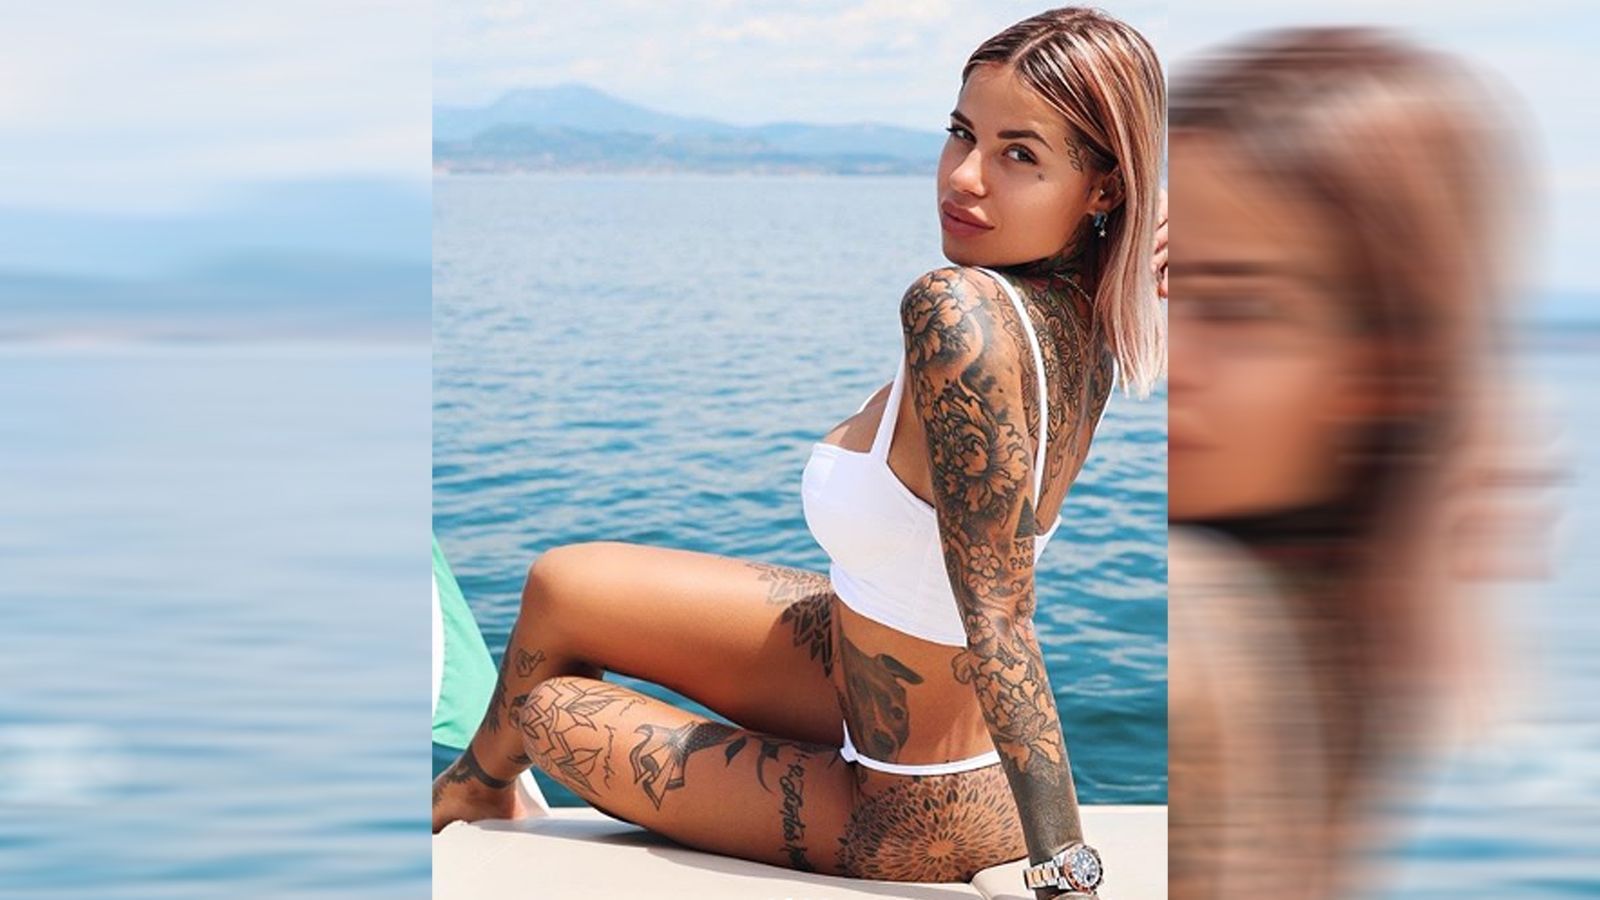 
                <strong>Zoe Cristofoli</strong><br>
                Ein großes Geheimnis um ihren Flirt machen das Tattoo-Model und der Fußball-Star ohnehin nicht wirklich. Auf Instagram kommentierte Hernandez zahlreiche, heiße Schnappschüsse von Zoe Cristofoli mit recht eindeutigen Liebes-Emojis.
              